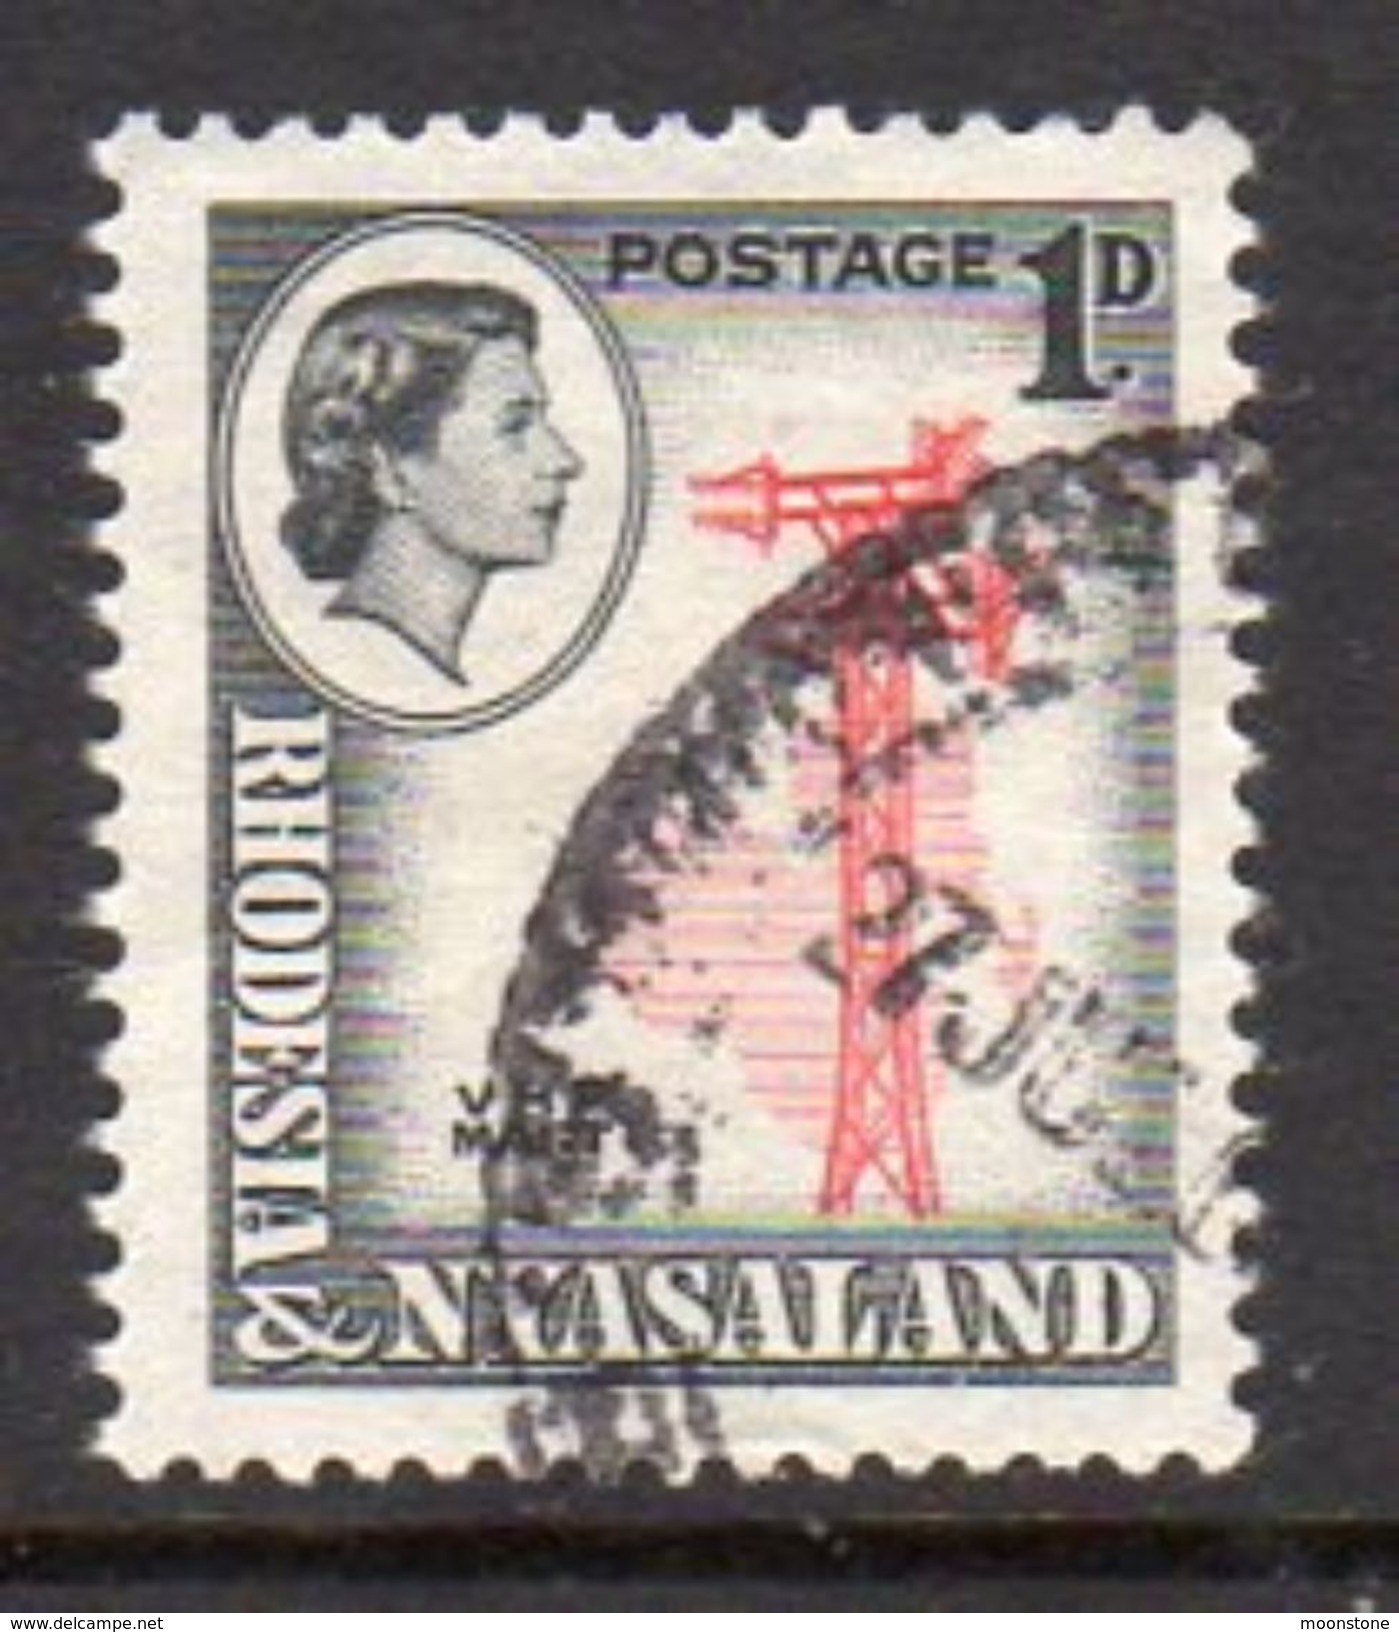 Rhodesia & Nyasaland 1959 1d VHF Radio Mast Definitive, Used, SG 19 (BA) - Rhodésie & Nyasaland (1954-1963)